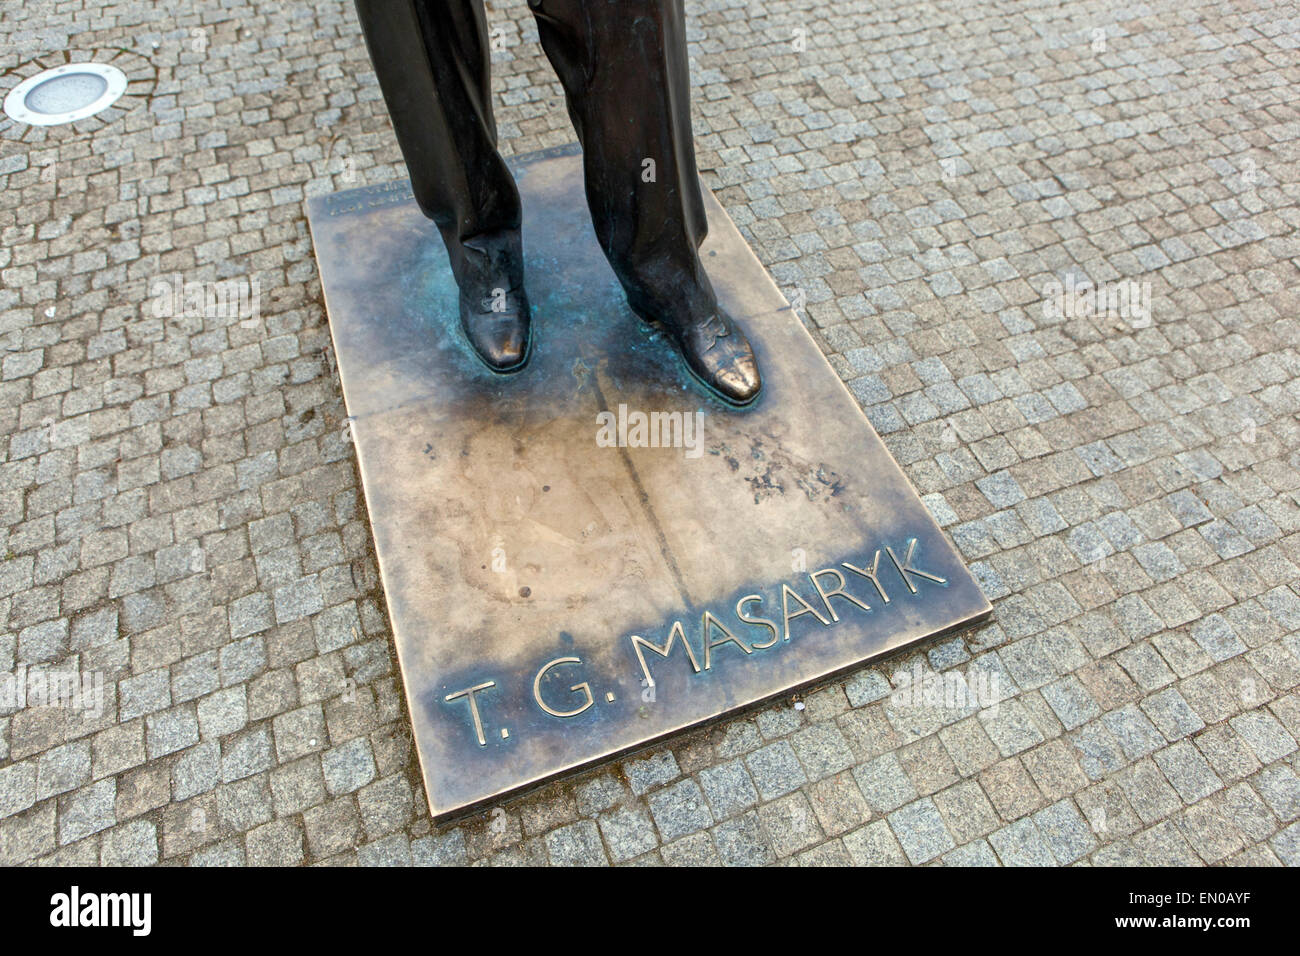 Détail statue en bronze de T. G. Masaryk, Podebrady, République Tchèque Banque D'Images